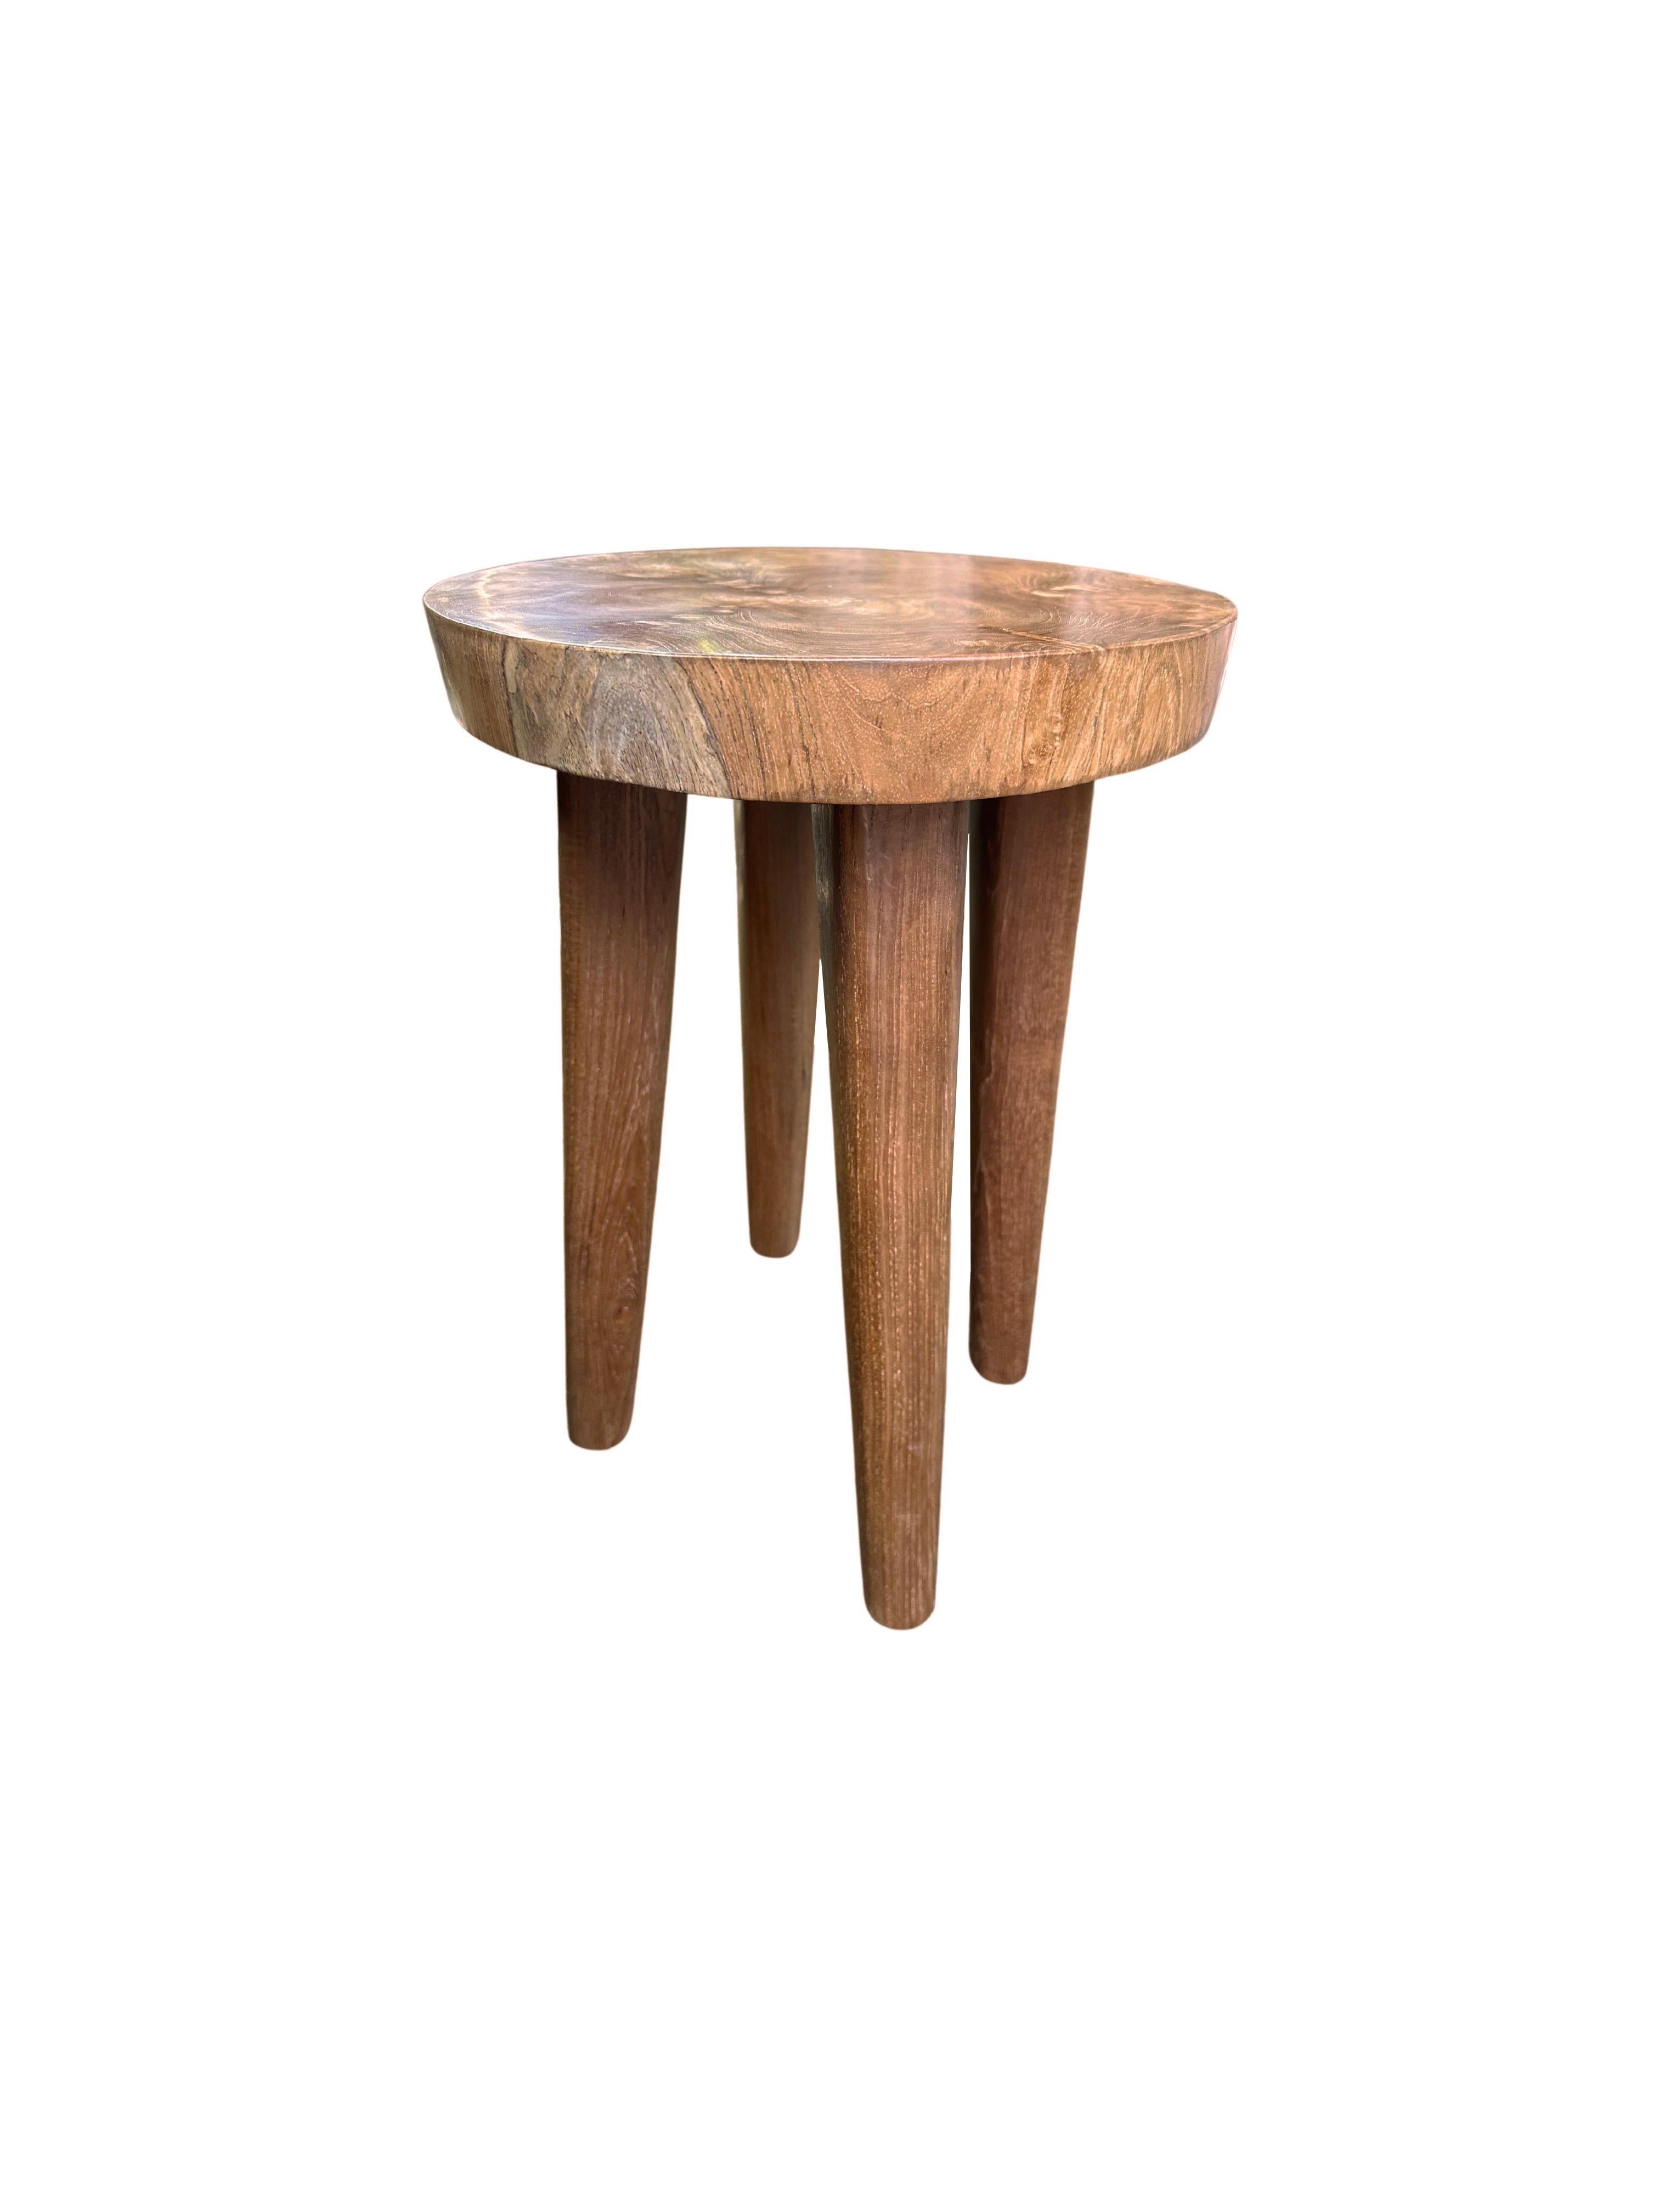 Dieser wundervoll skulpturale Hocker wurde aus Mangoholz gefertigt. Der Stuhl ruht auf 4 schlanken Beinen. Durch seine neutrale Pigmentierung passt er perfekt in jeden Raum. Ein einzigartiges skulpturales und vielseitiges Stück, das garantiert für